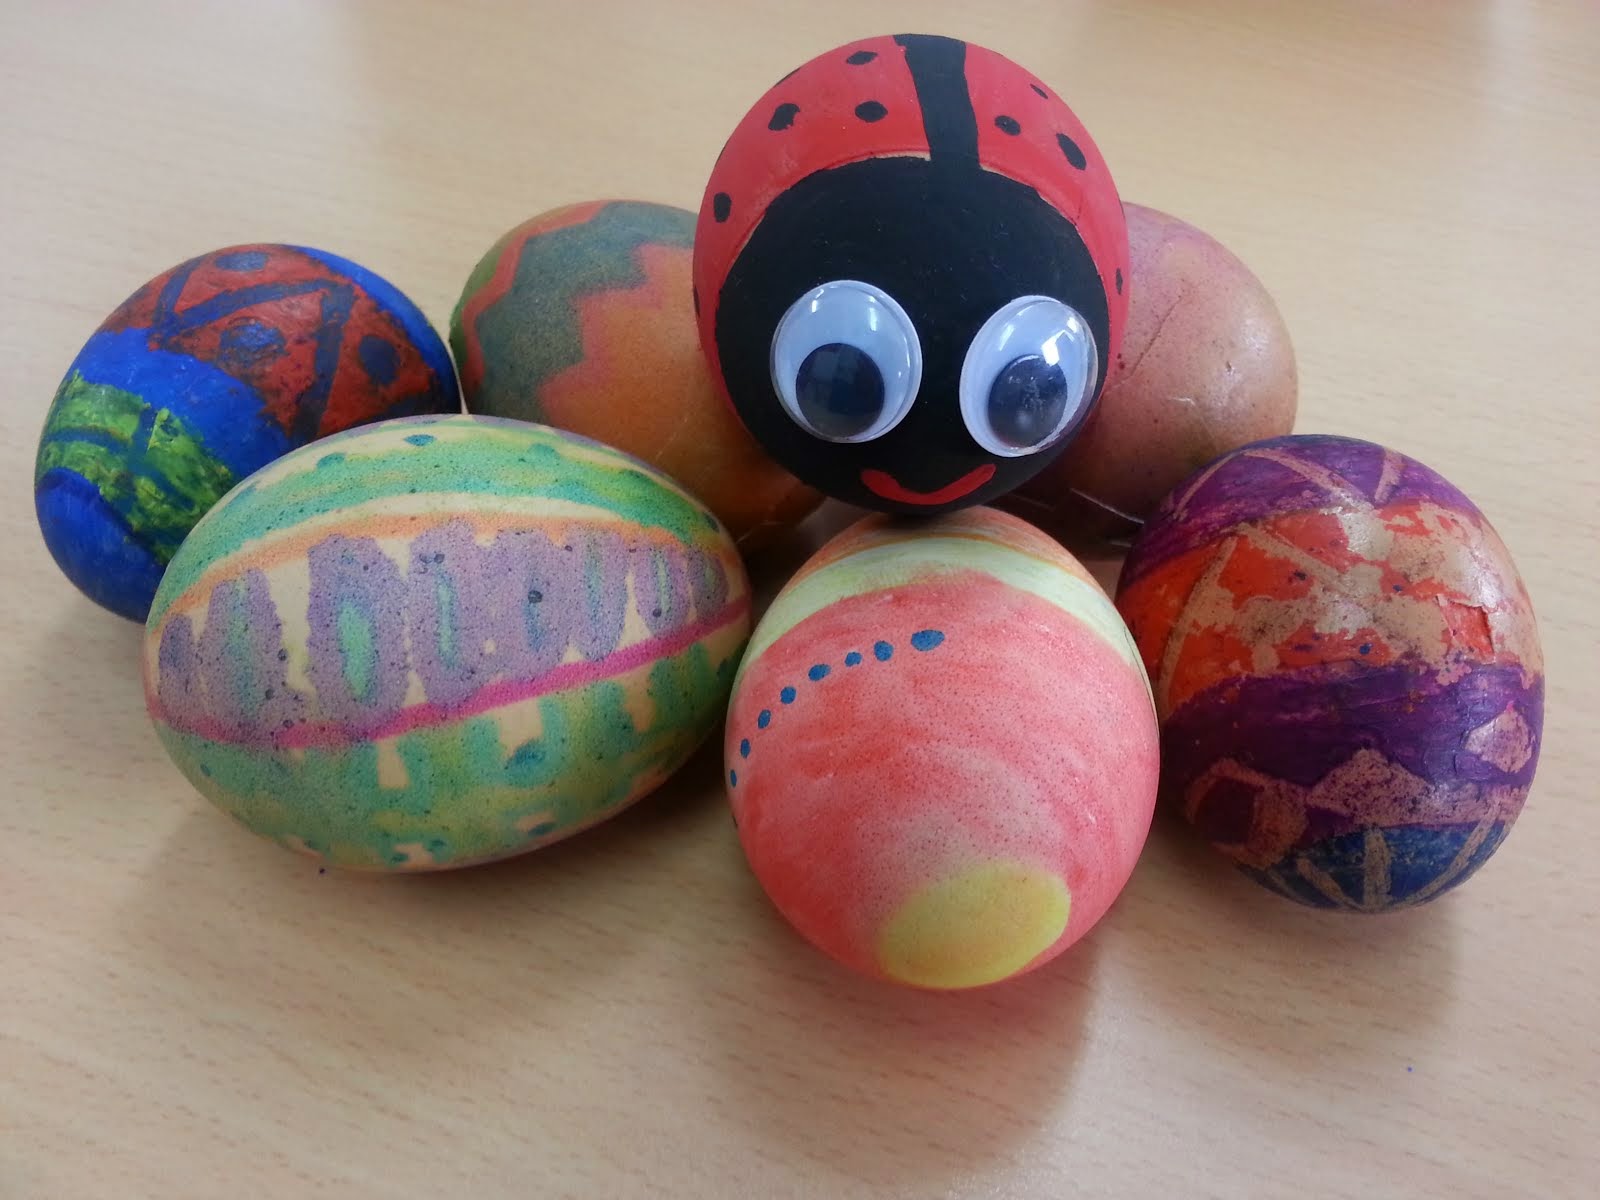 Para colorear y ver nuevos diseños de huevos de Pascua, hacer clik en la imagen.